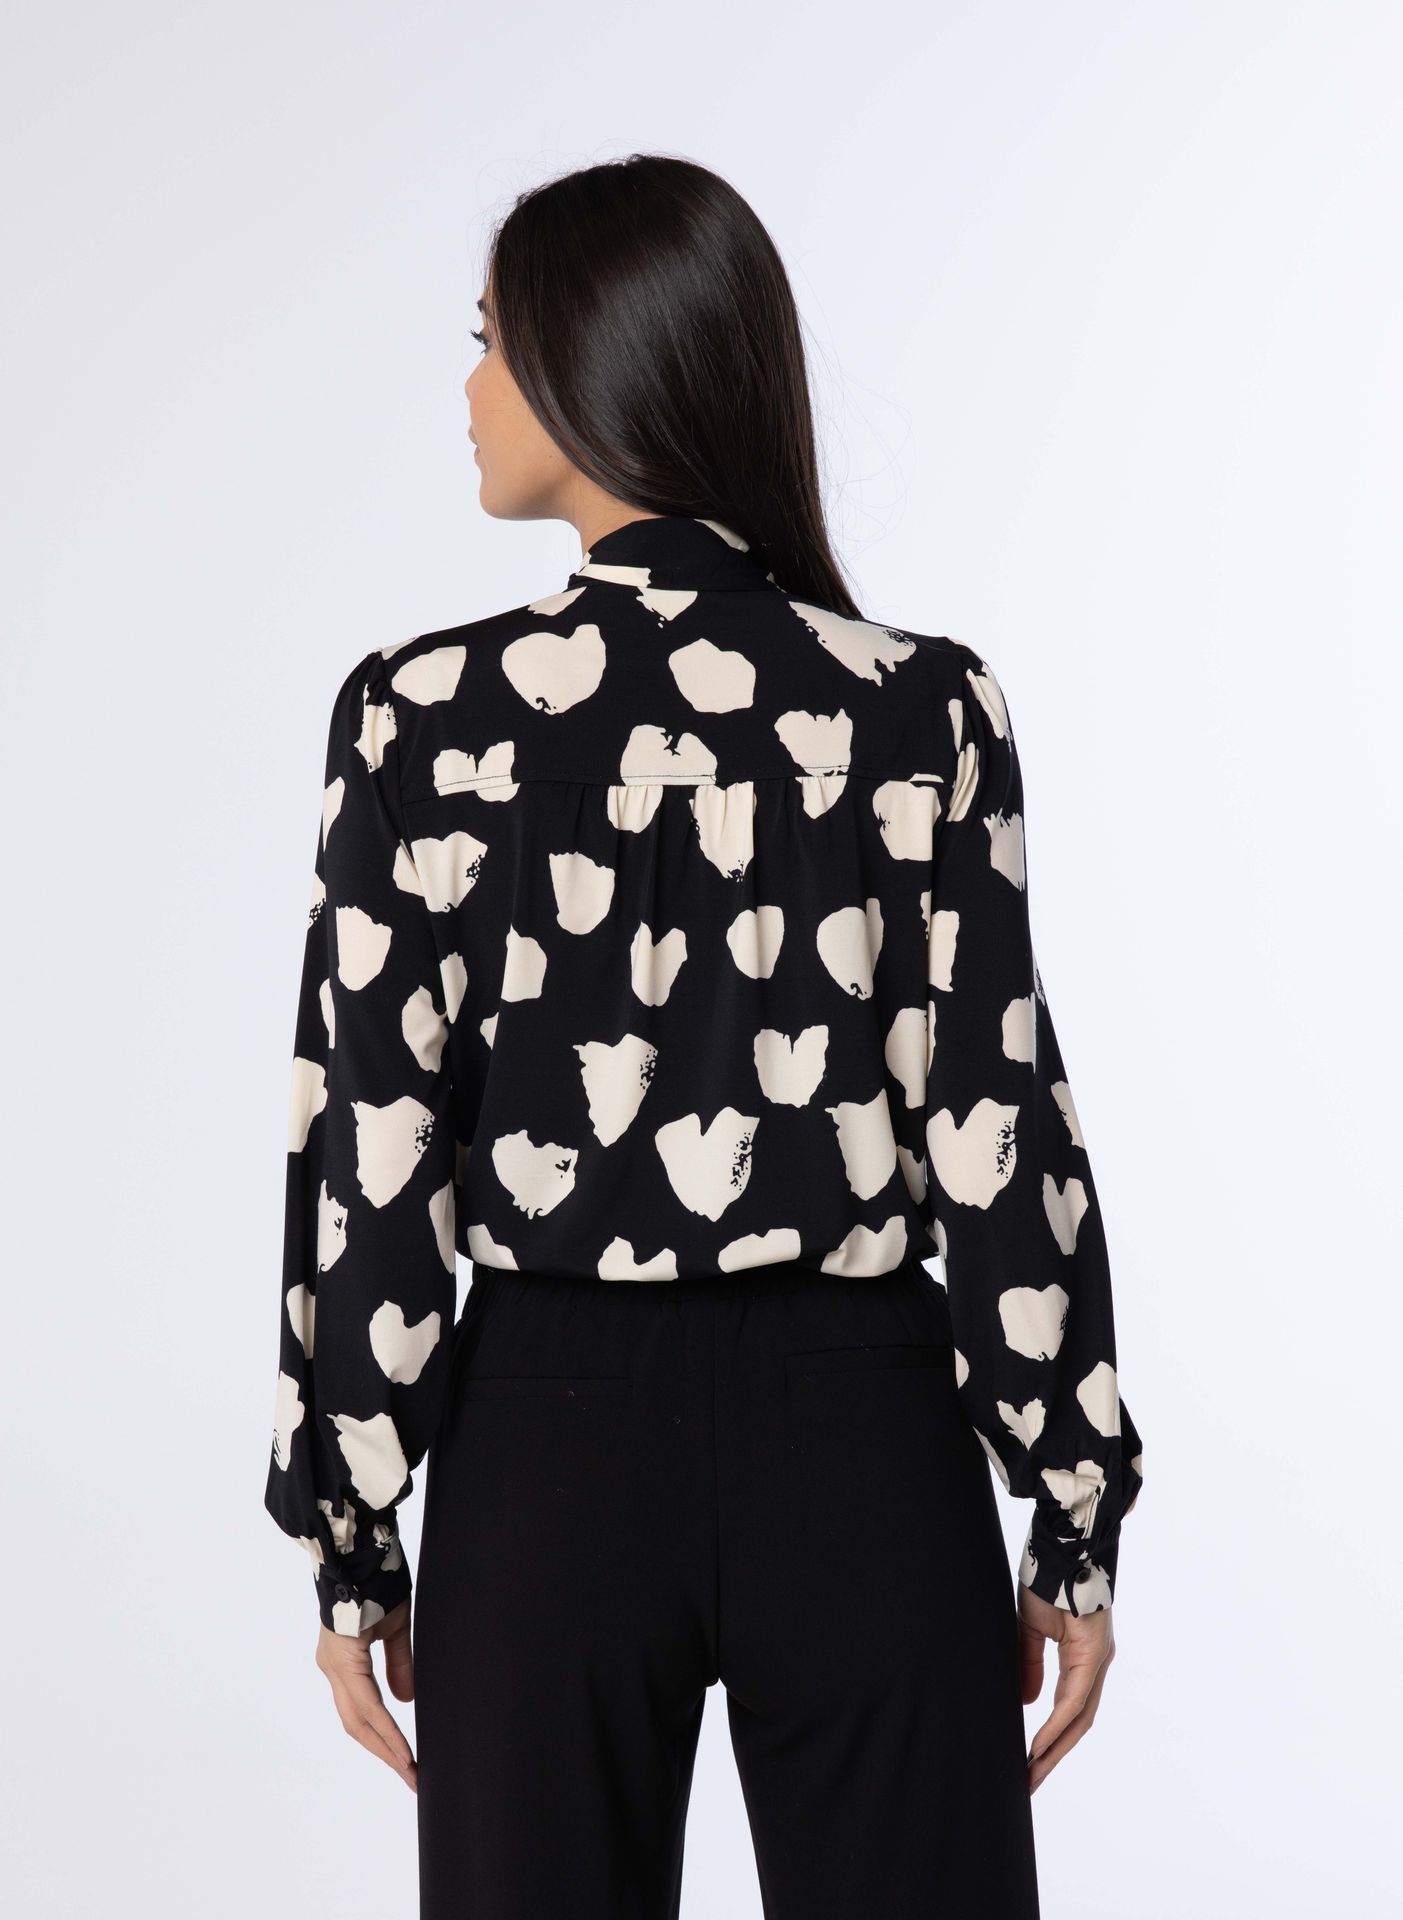 Norah Zwarte blouse met strikdetail black/white 214088-031